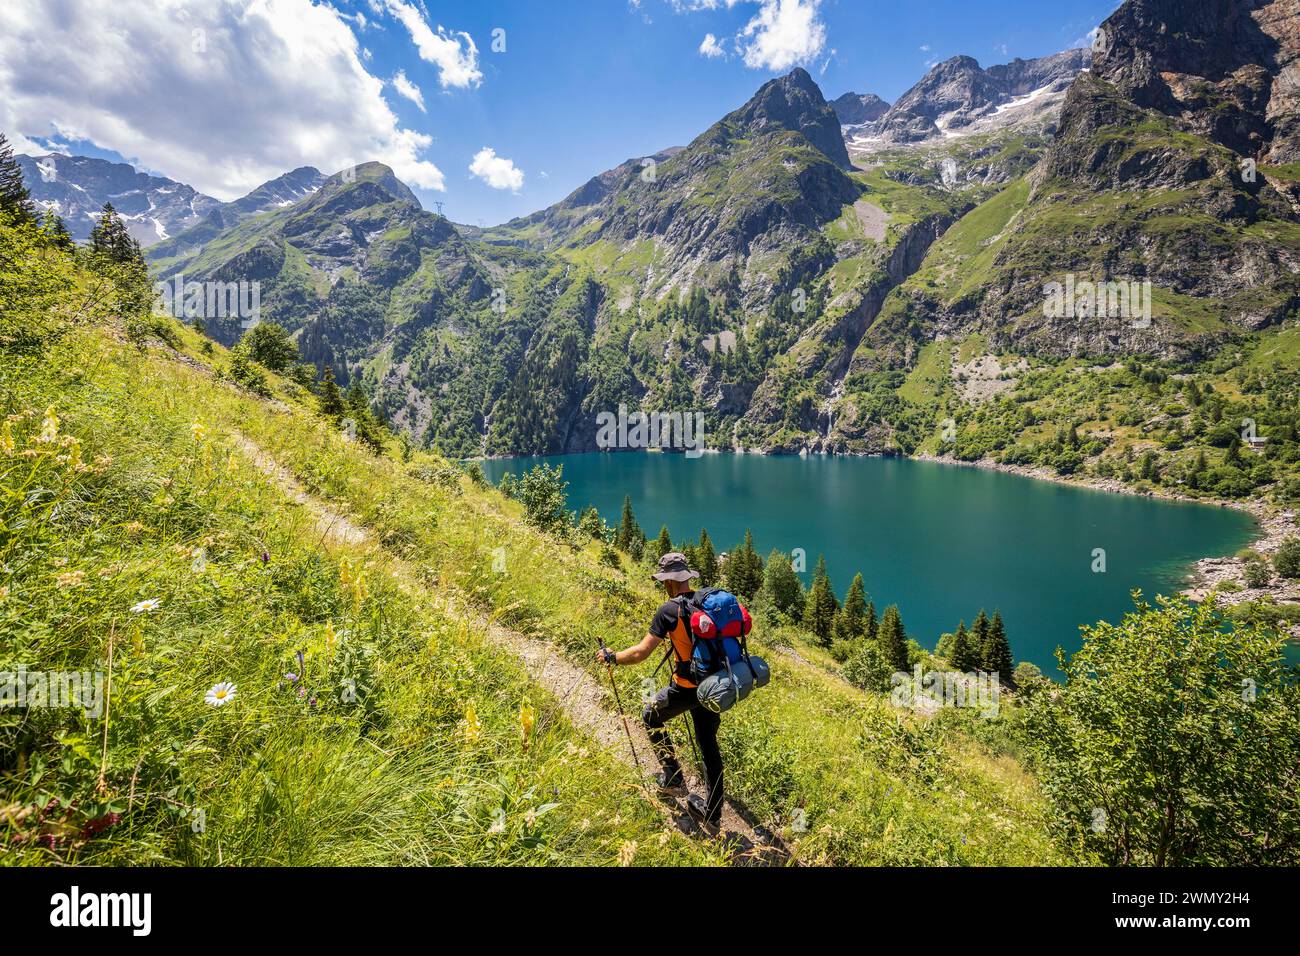 Francia, Isère, Parco Nazionale Ecrins, valle Vénéon, lago Lauvitel (1530 m), escursionista sul sentiero GR 54, Tour de l'Oisans ed Ecrins Foto Stock